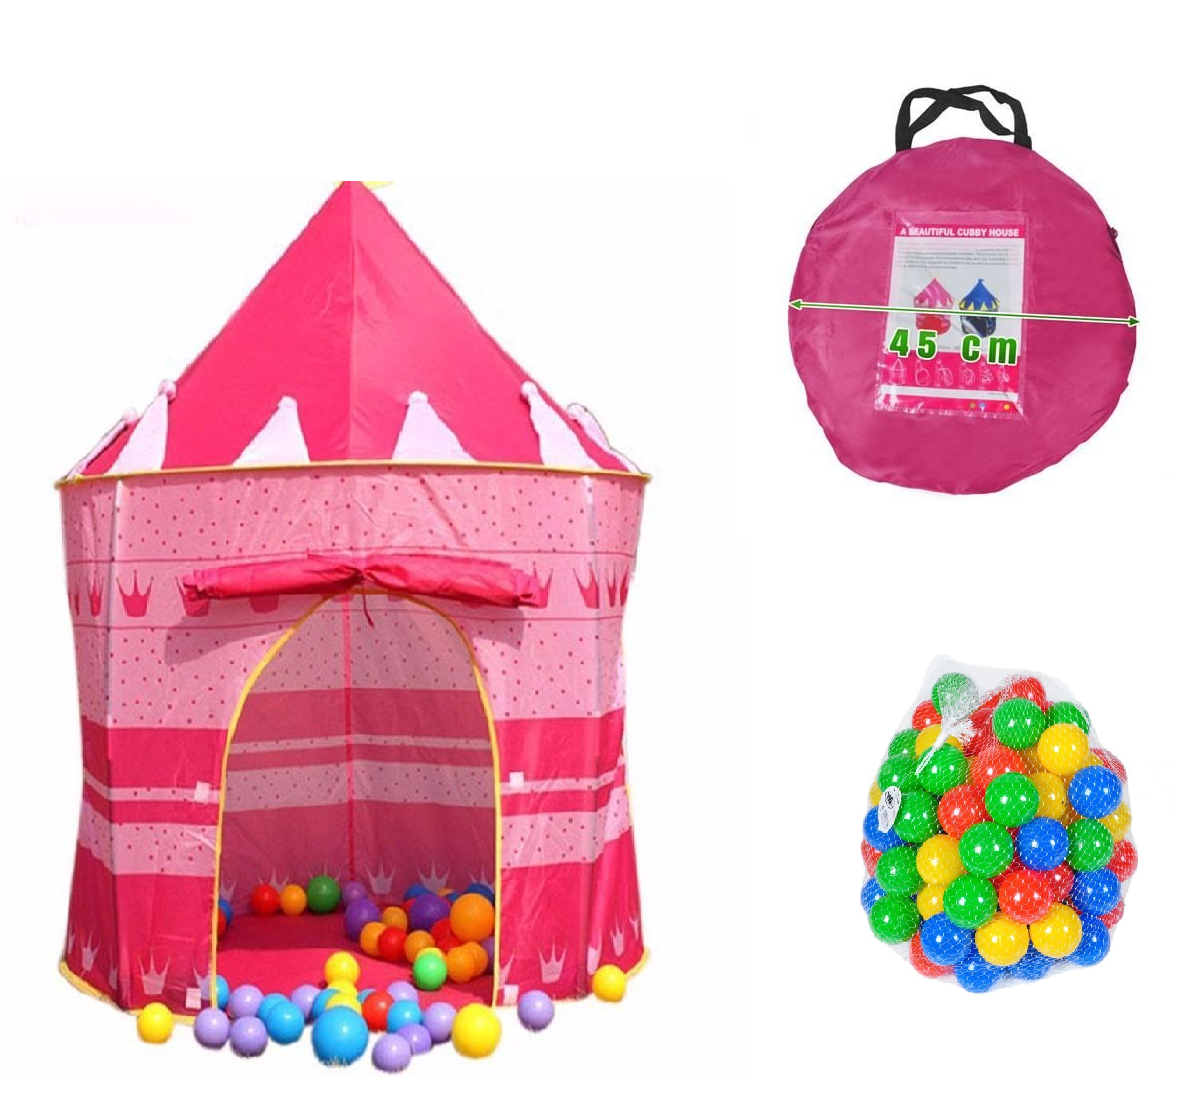 Cort de joaca pentru copii ISP LikeSmart Cubby House, usor de instalat, 100 de bile Colorate + Husa de Transport inclusa, Roz